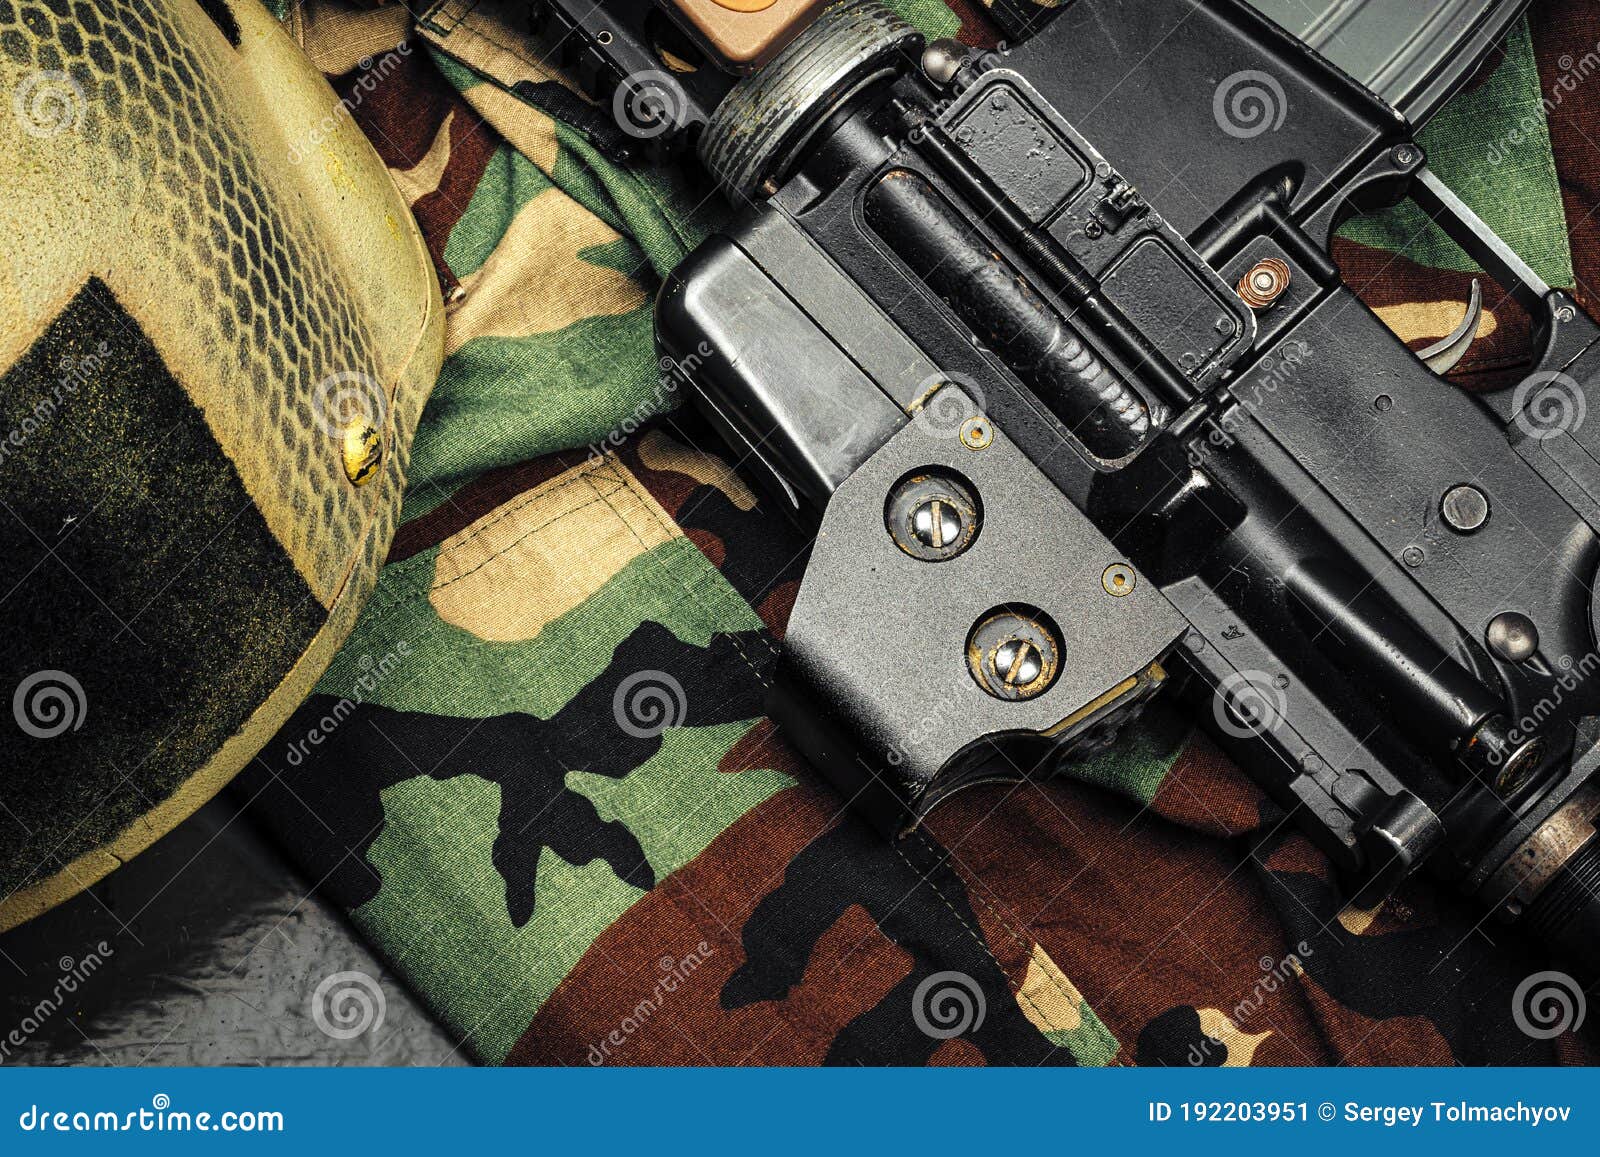 Khaki Military Uniform with Ammunition Close Up Stock Image - Image of ...